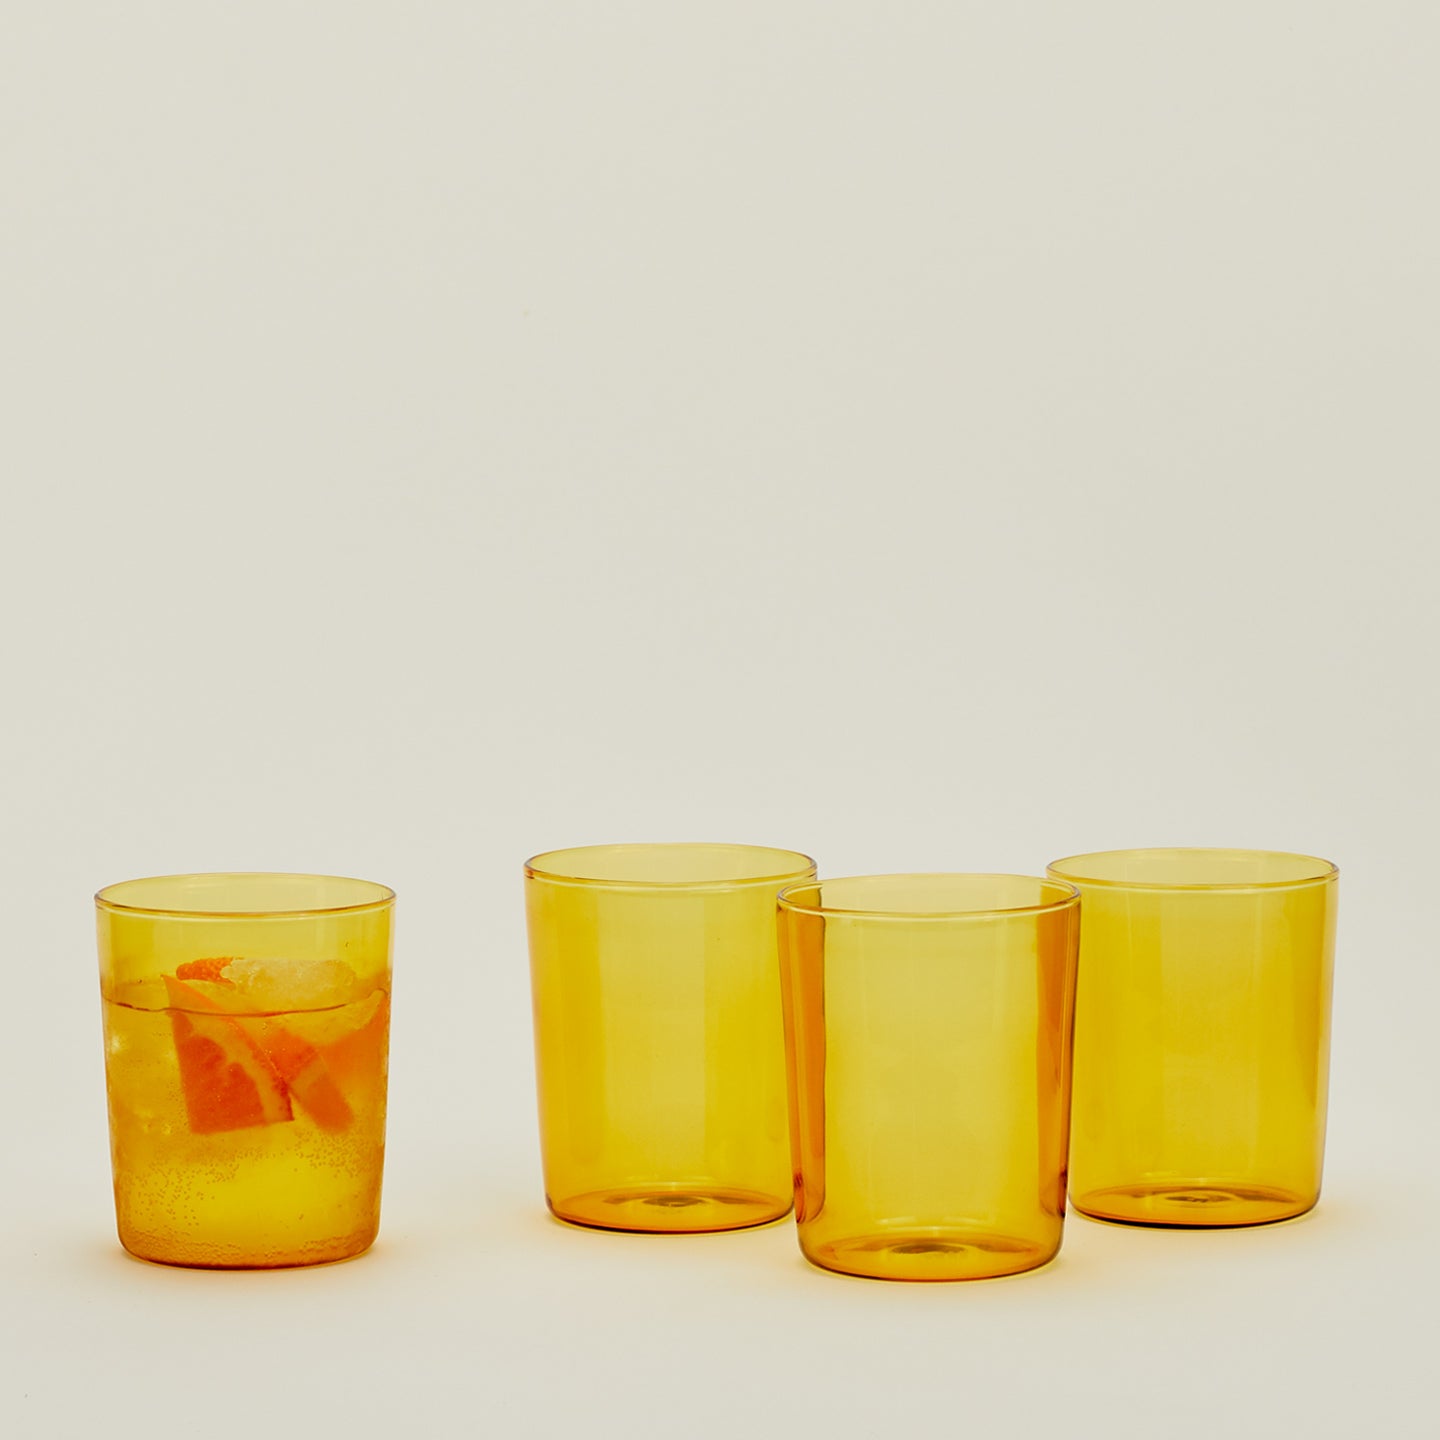 Four Medium Essential Glasses in Amber.